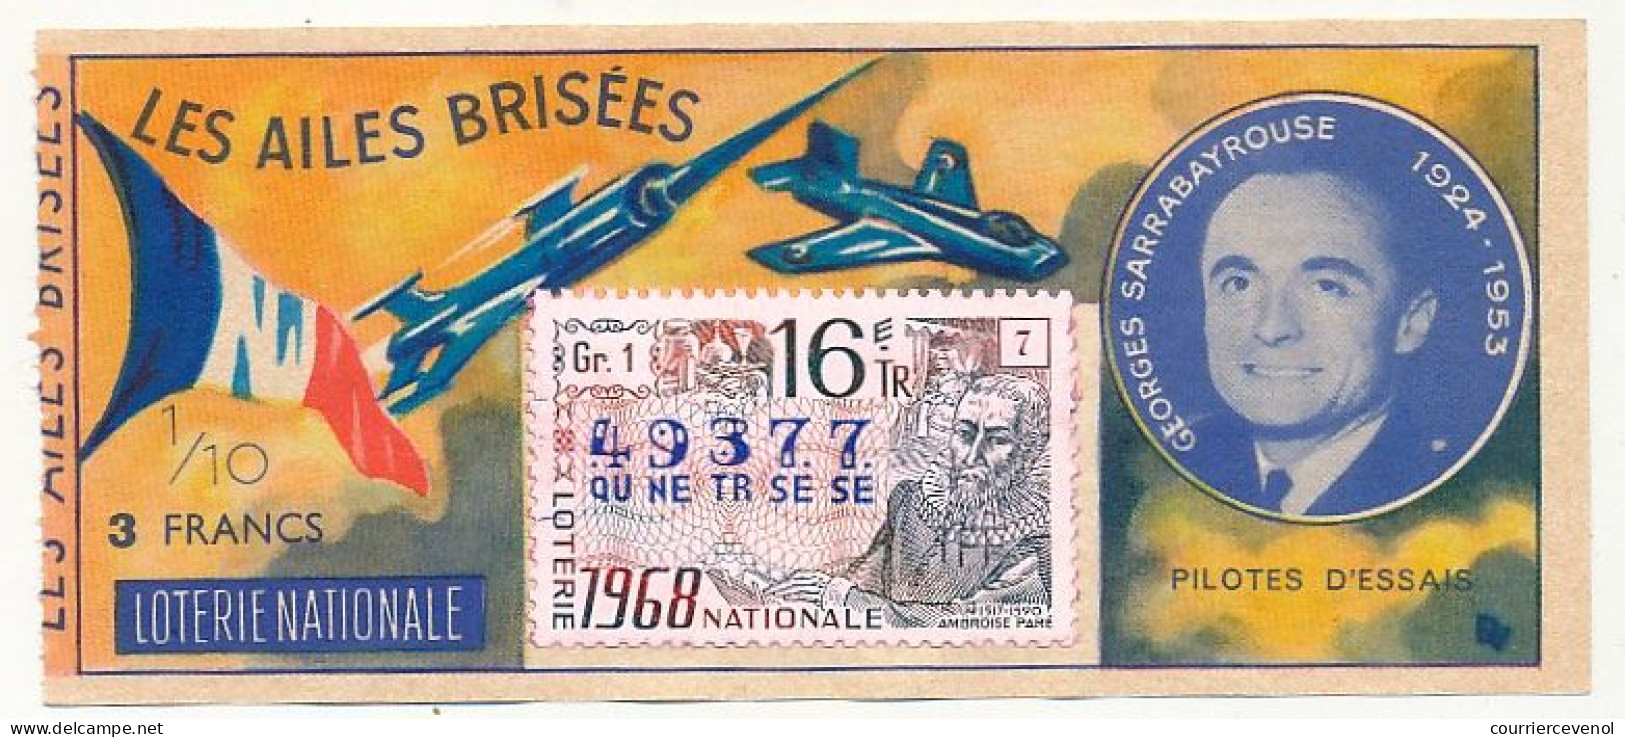 FRANCE - Loterie Nationale - 1/10ème - Les Ailes Brisées - Pilotes D'essais - Georges Sarrabayrouse - 16èm Tr 1968 - Lotterielose